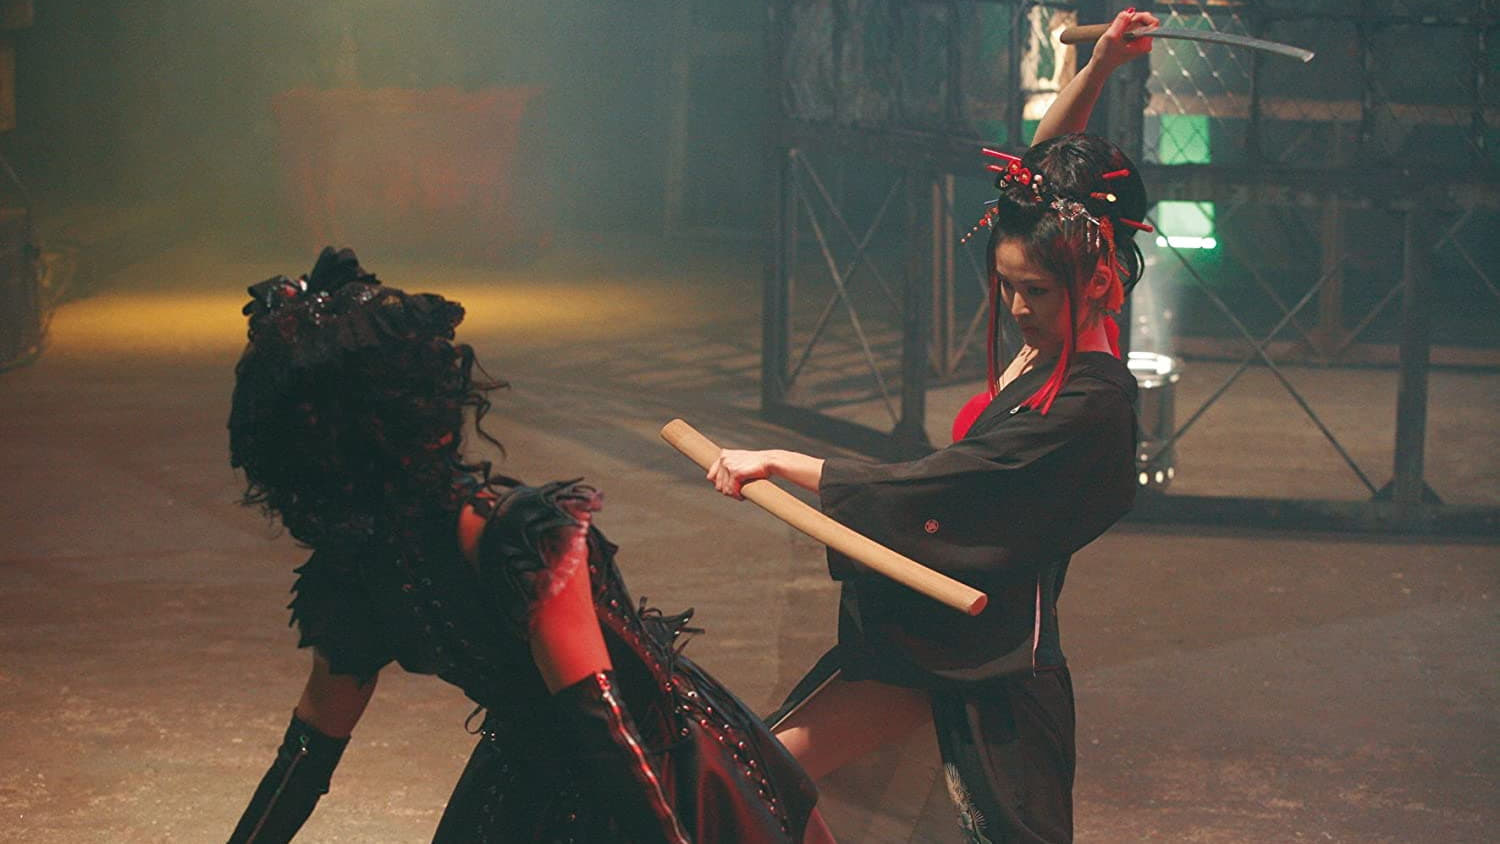 Gothic & Lolita Psycho (2010)